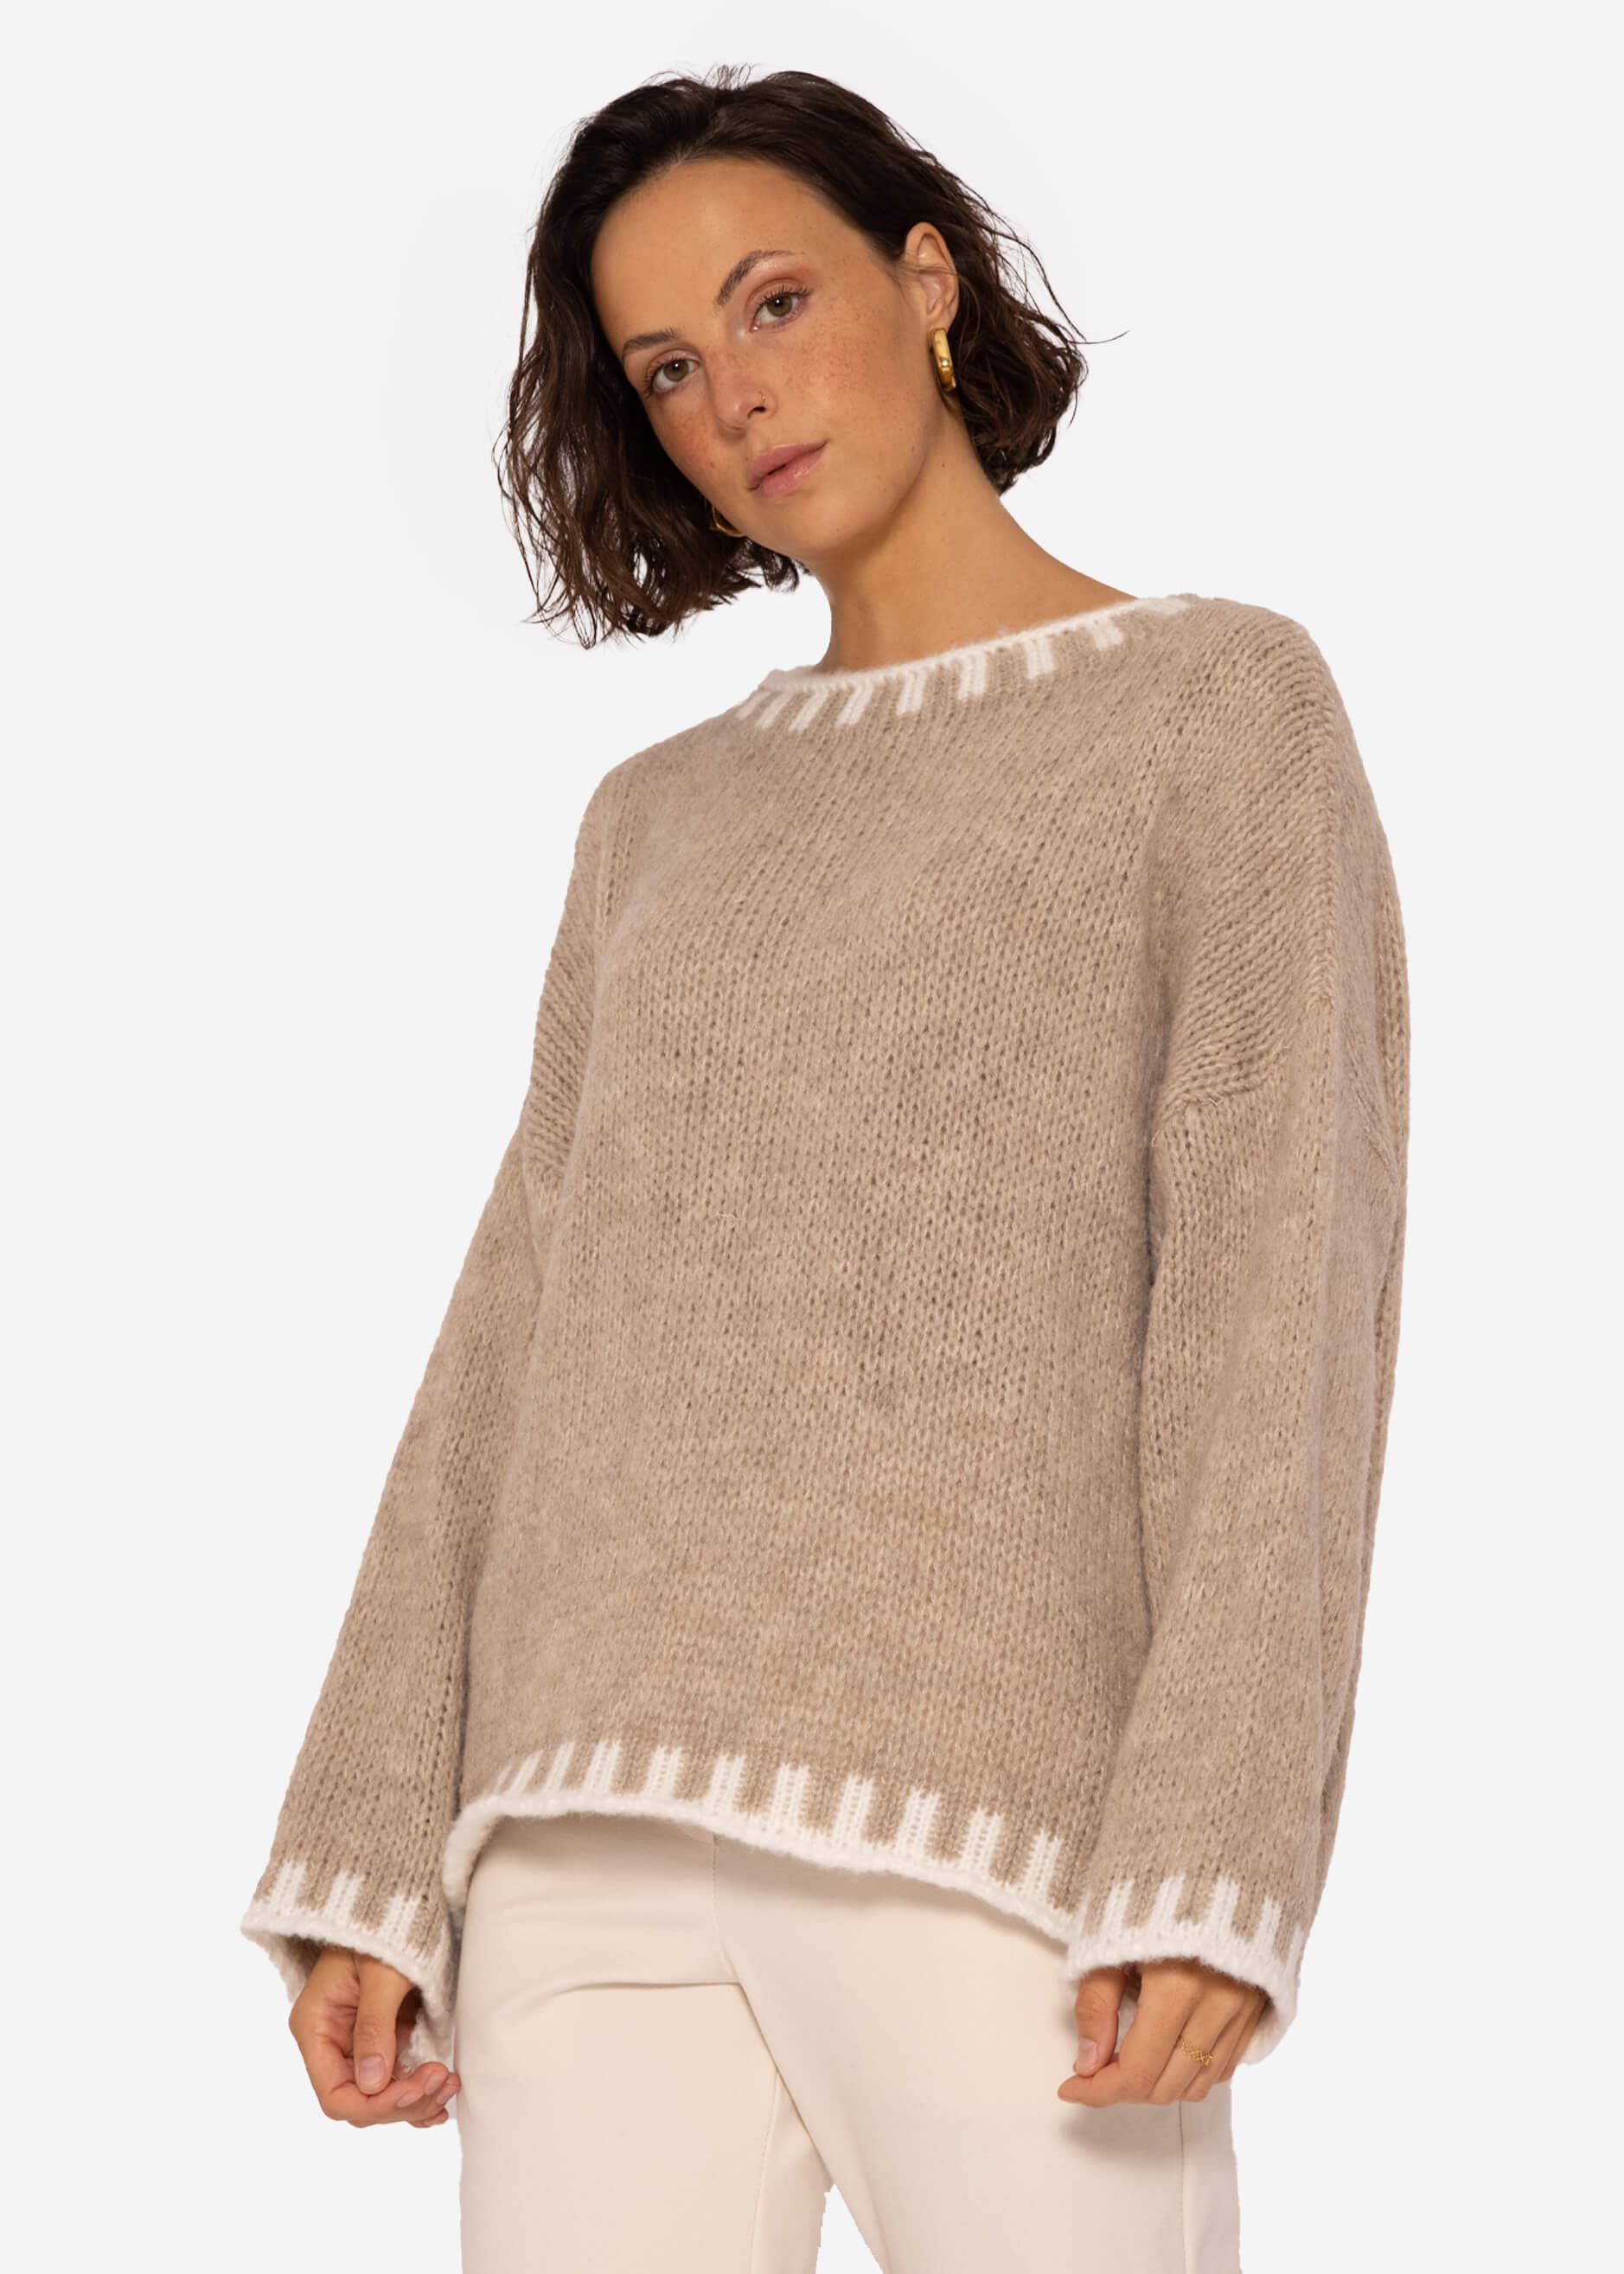 Pullover mit offwhite SASSYCLASSY beige | Details, Pullover | Bekleidung 